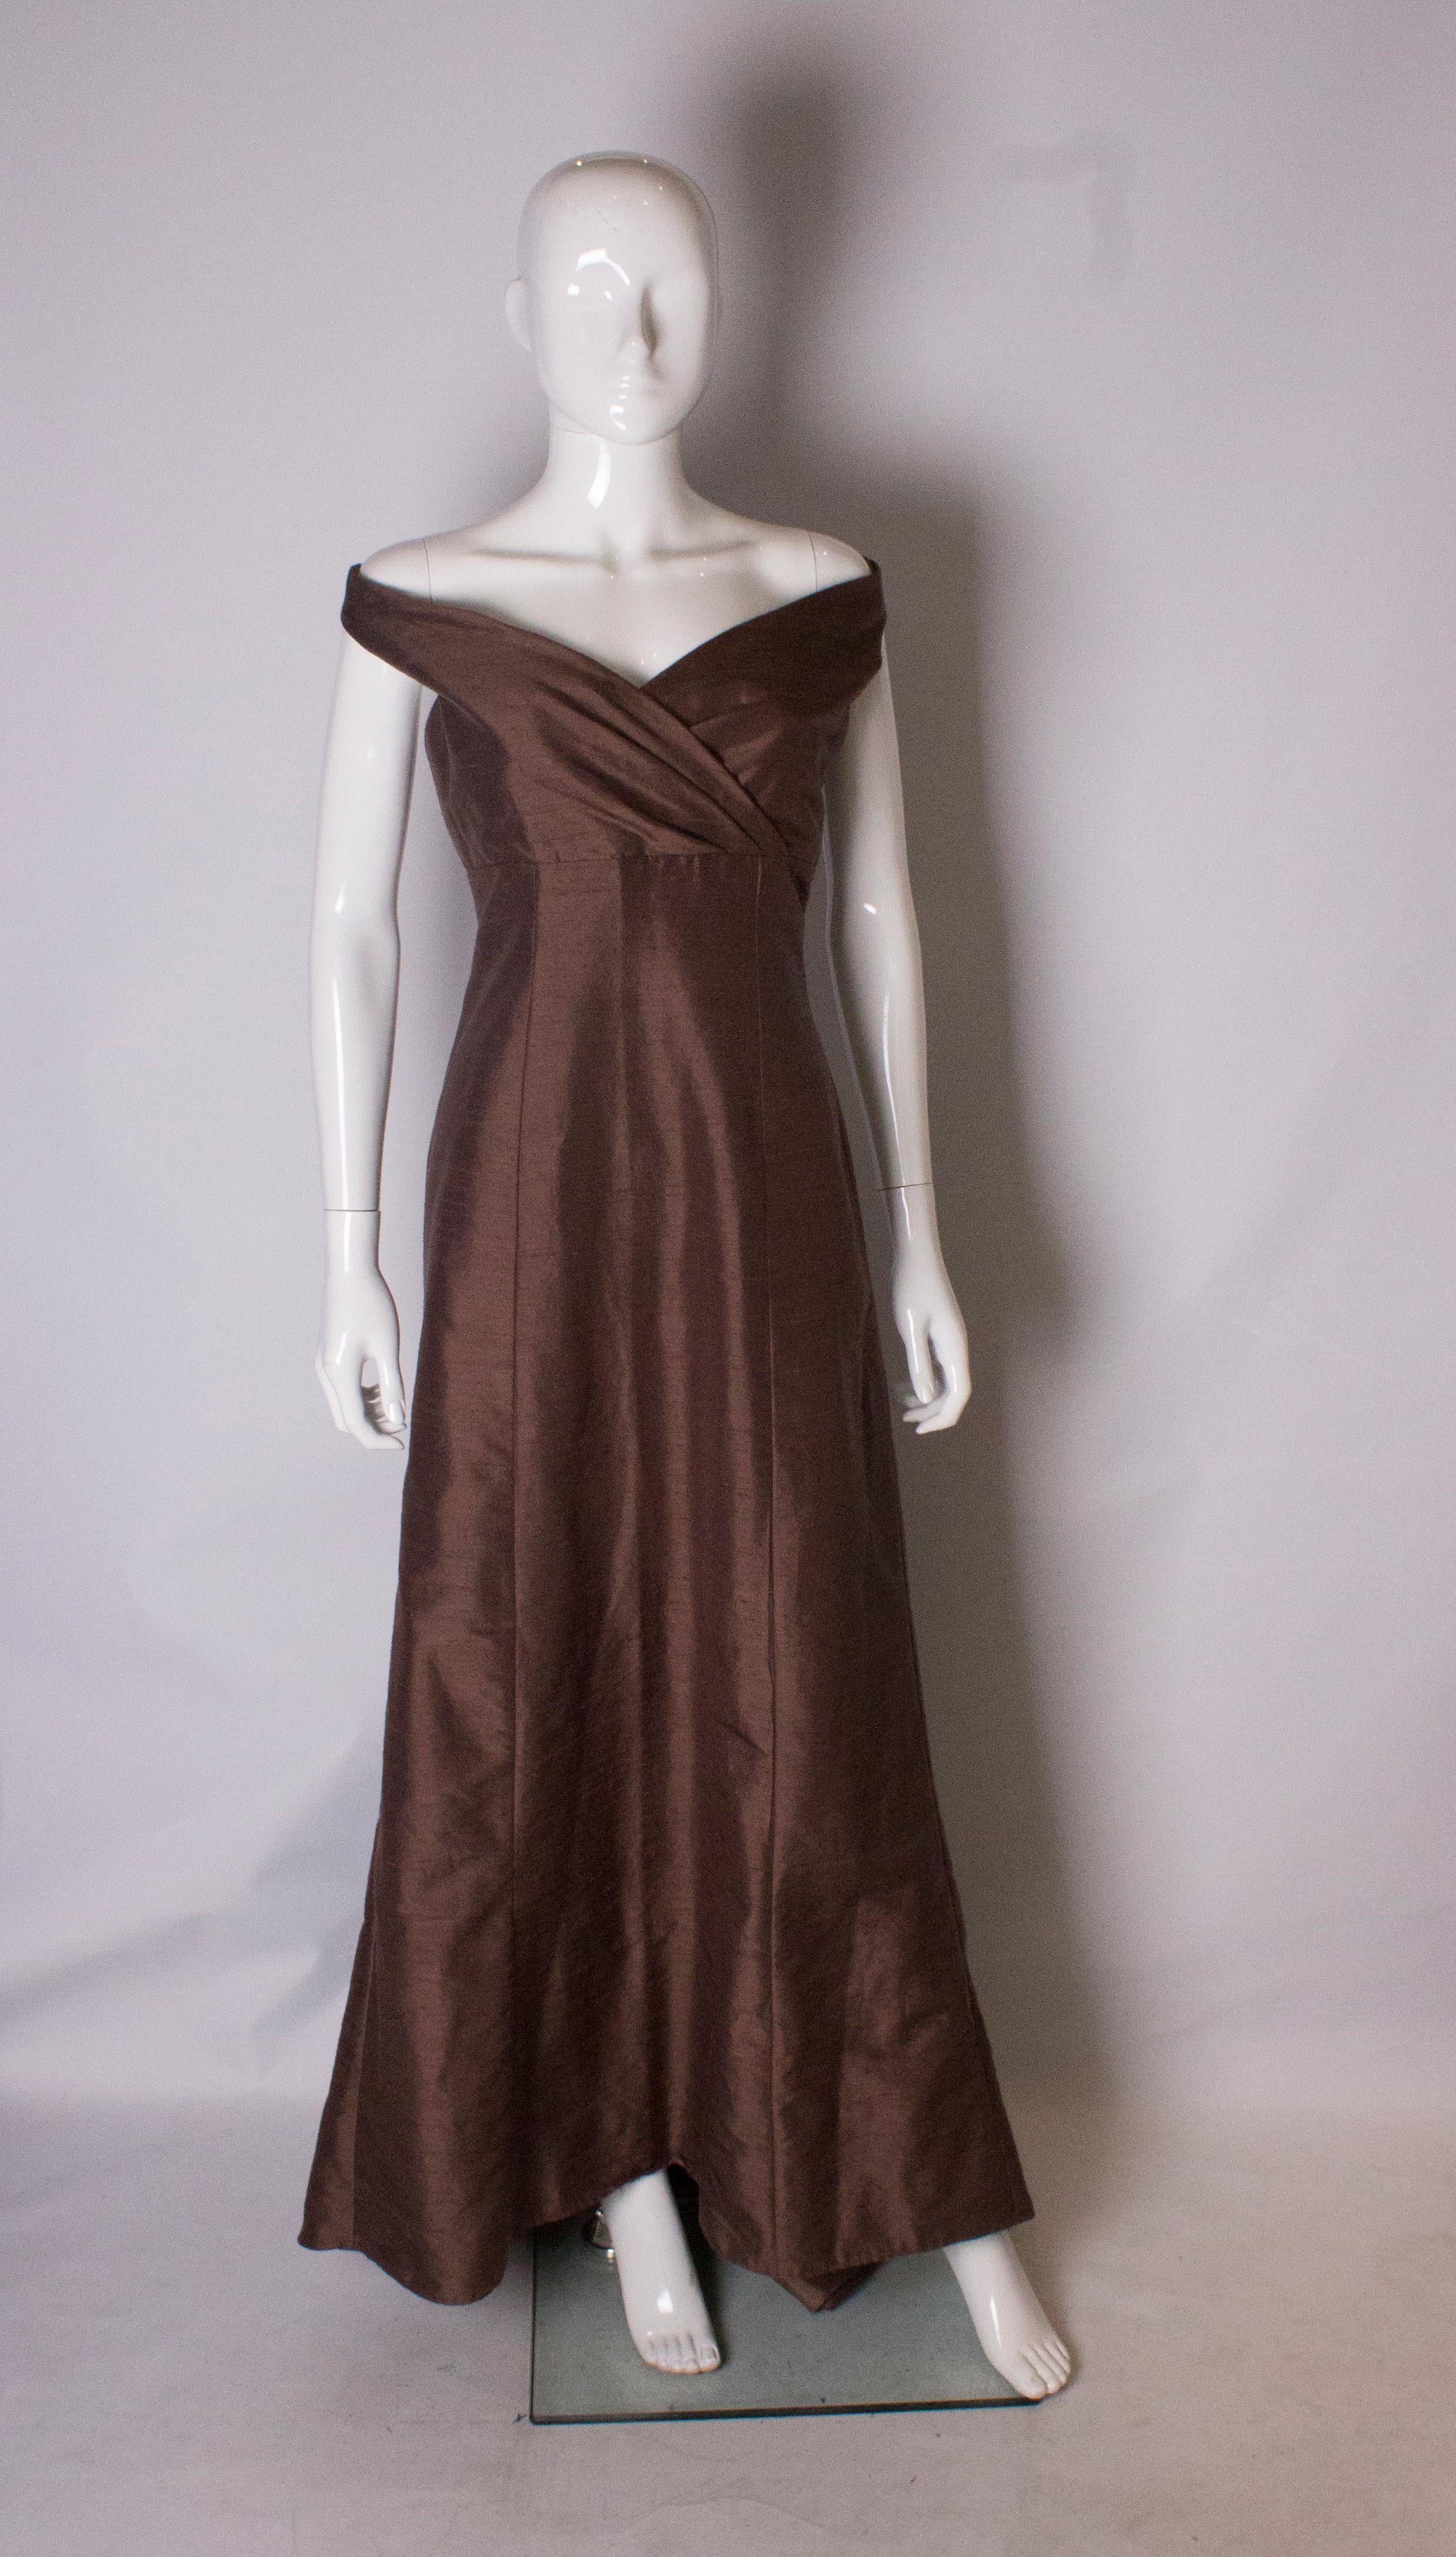 Ein wunderschönes Vintage-Seidenkleid in einem hübschen Braunton. Das Kleid hat eine überkreuzte Vorderseite und ist leicht schulterfrei.
Es hat einen zentralen Reißverschluss auf der Rückseite, ist vollständig gefüttert und hat eine Pfützenschleppe.